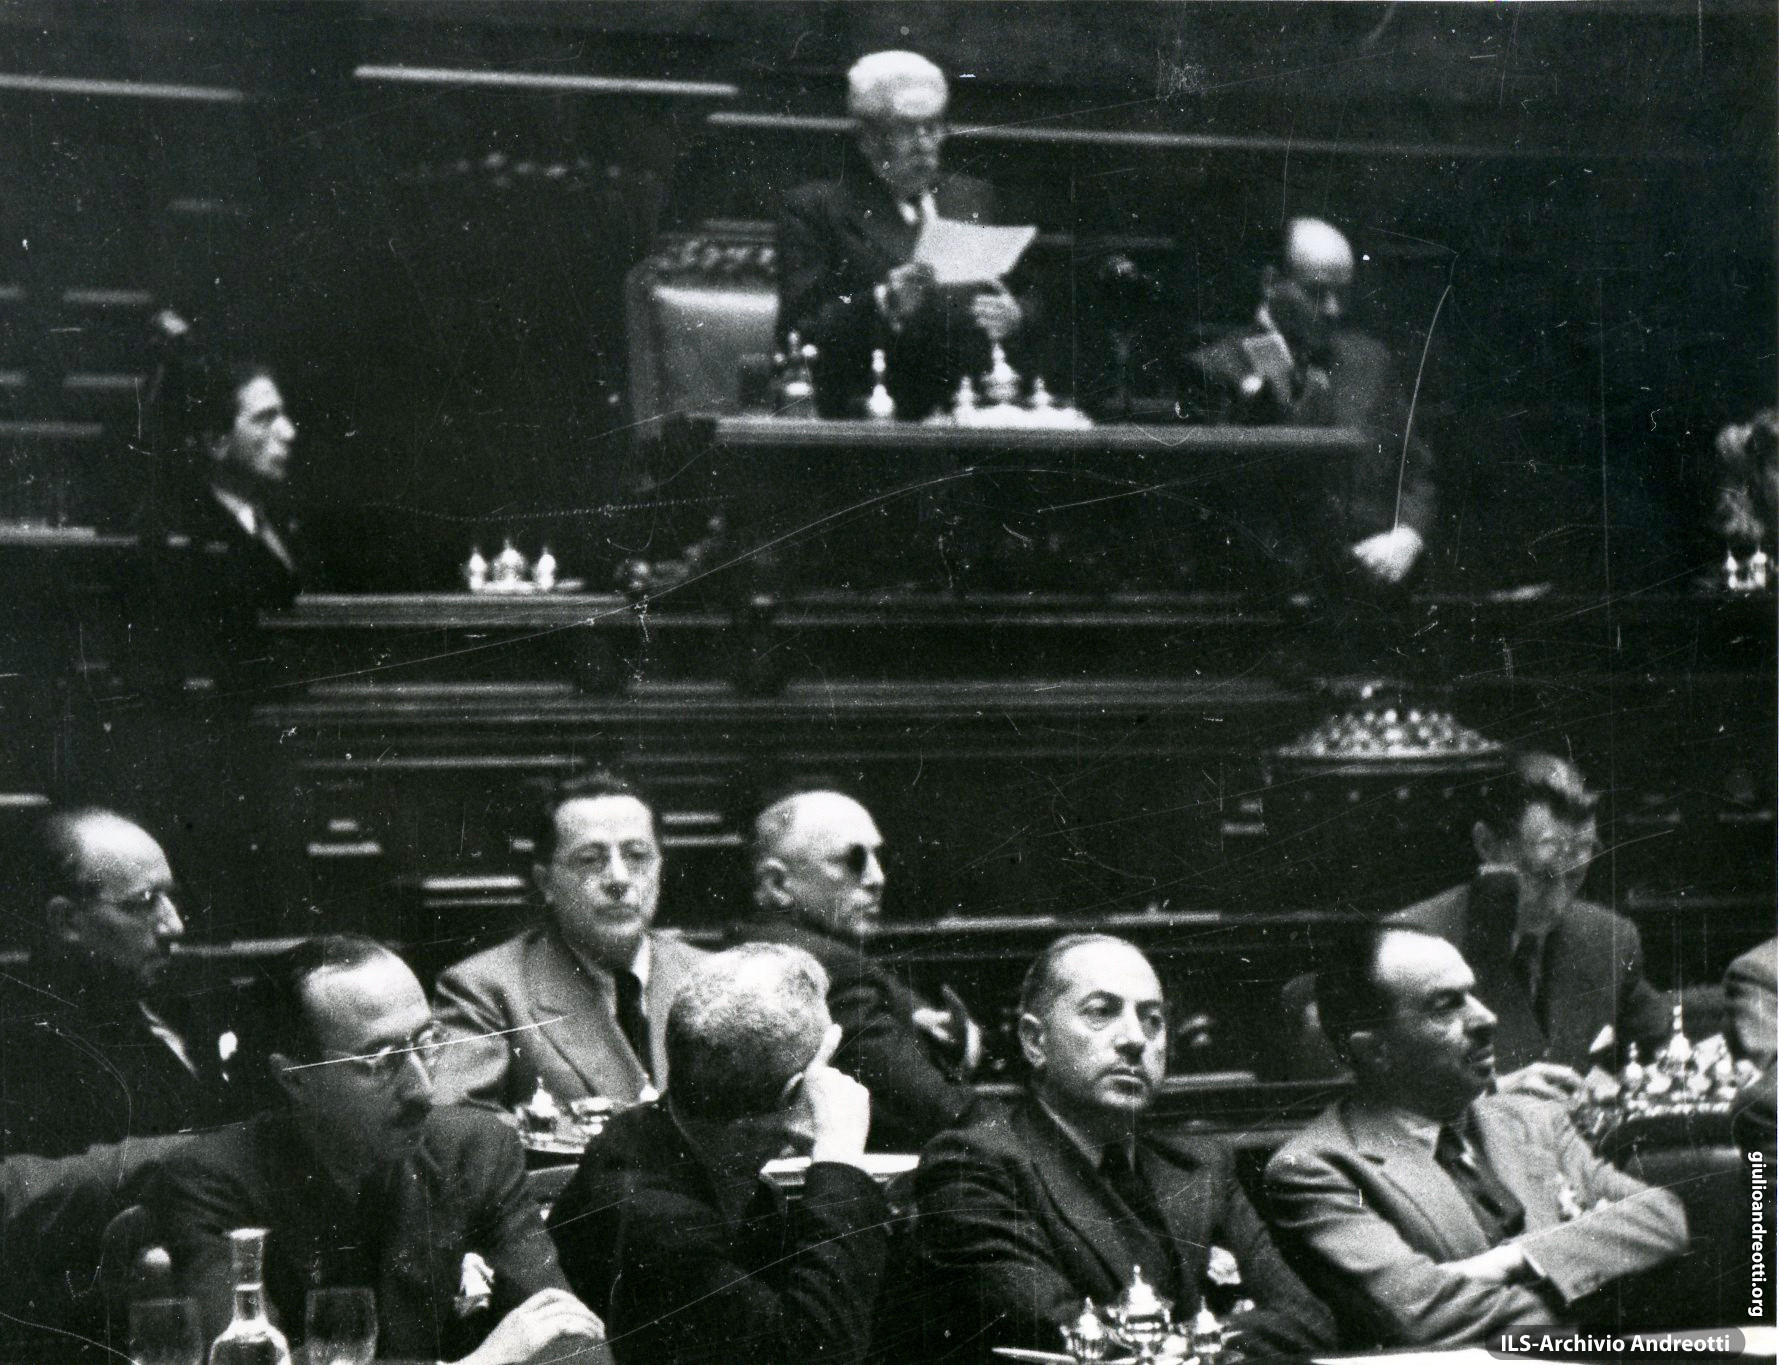 25 giugno 1946. Andreotti al banco di segretario durante la seduta inaugurale dell'Assemblea Costituente. Parla il Presidente Vittorio Emanuele Orlando.